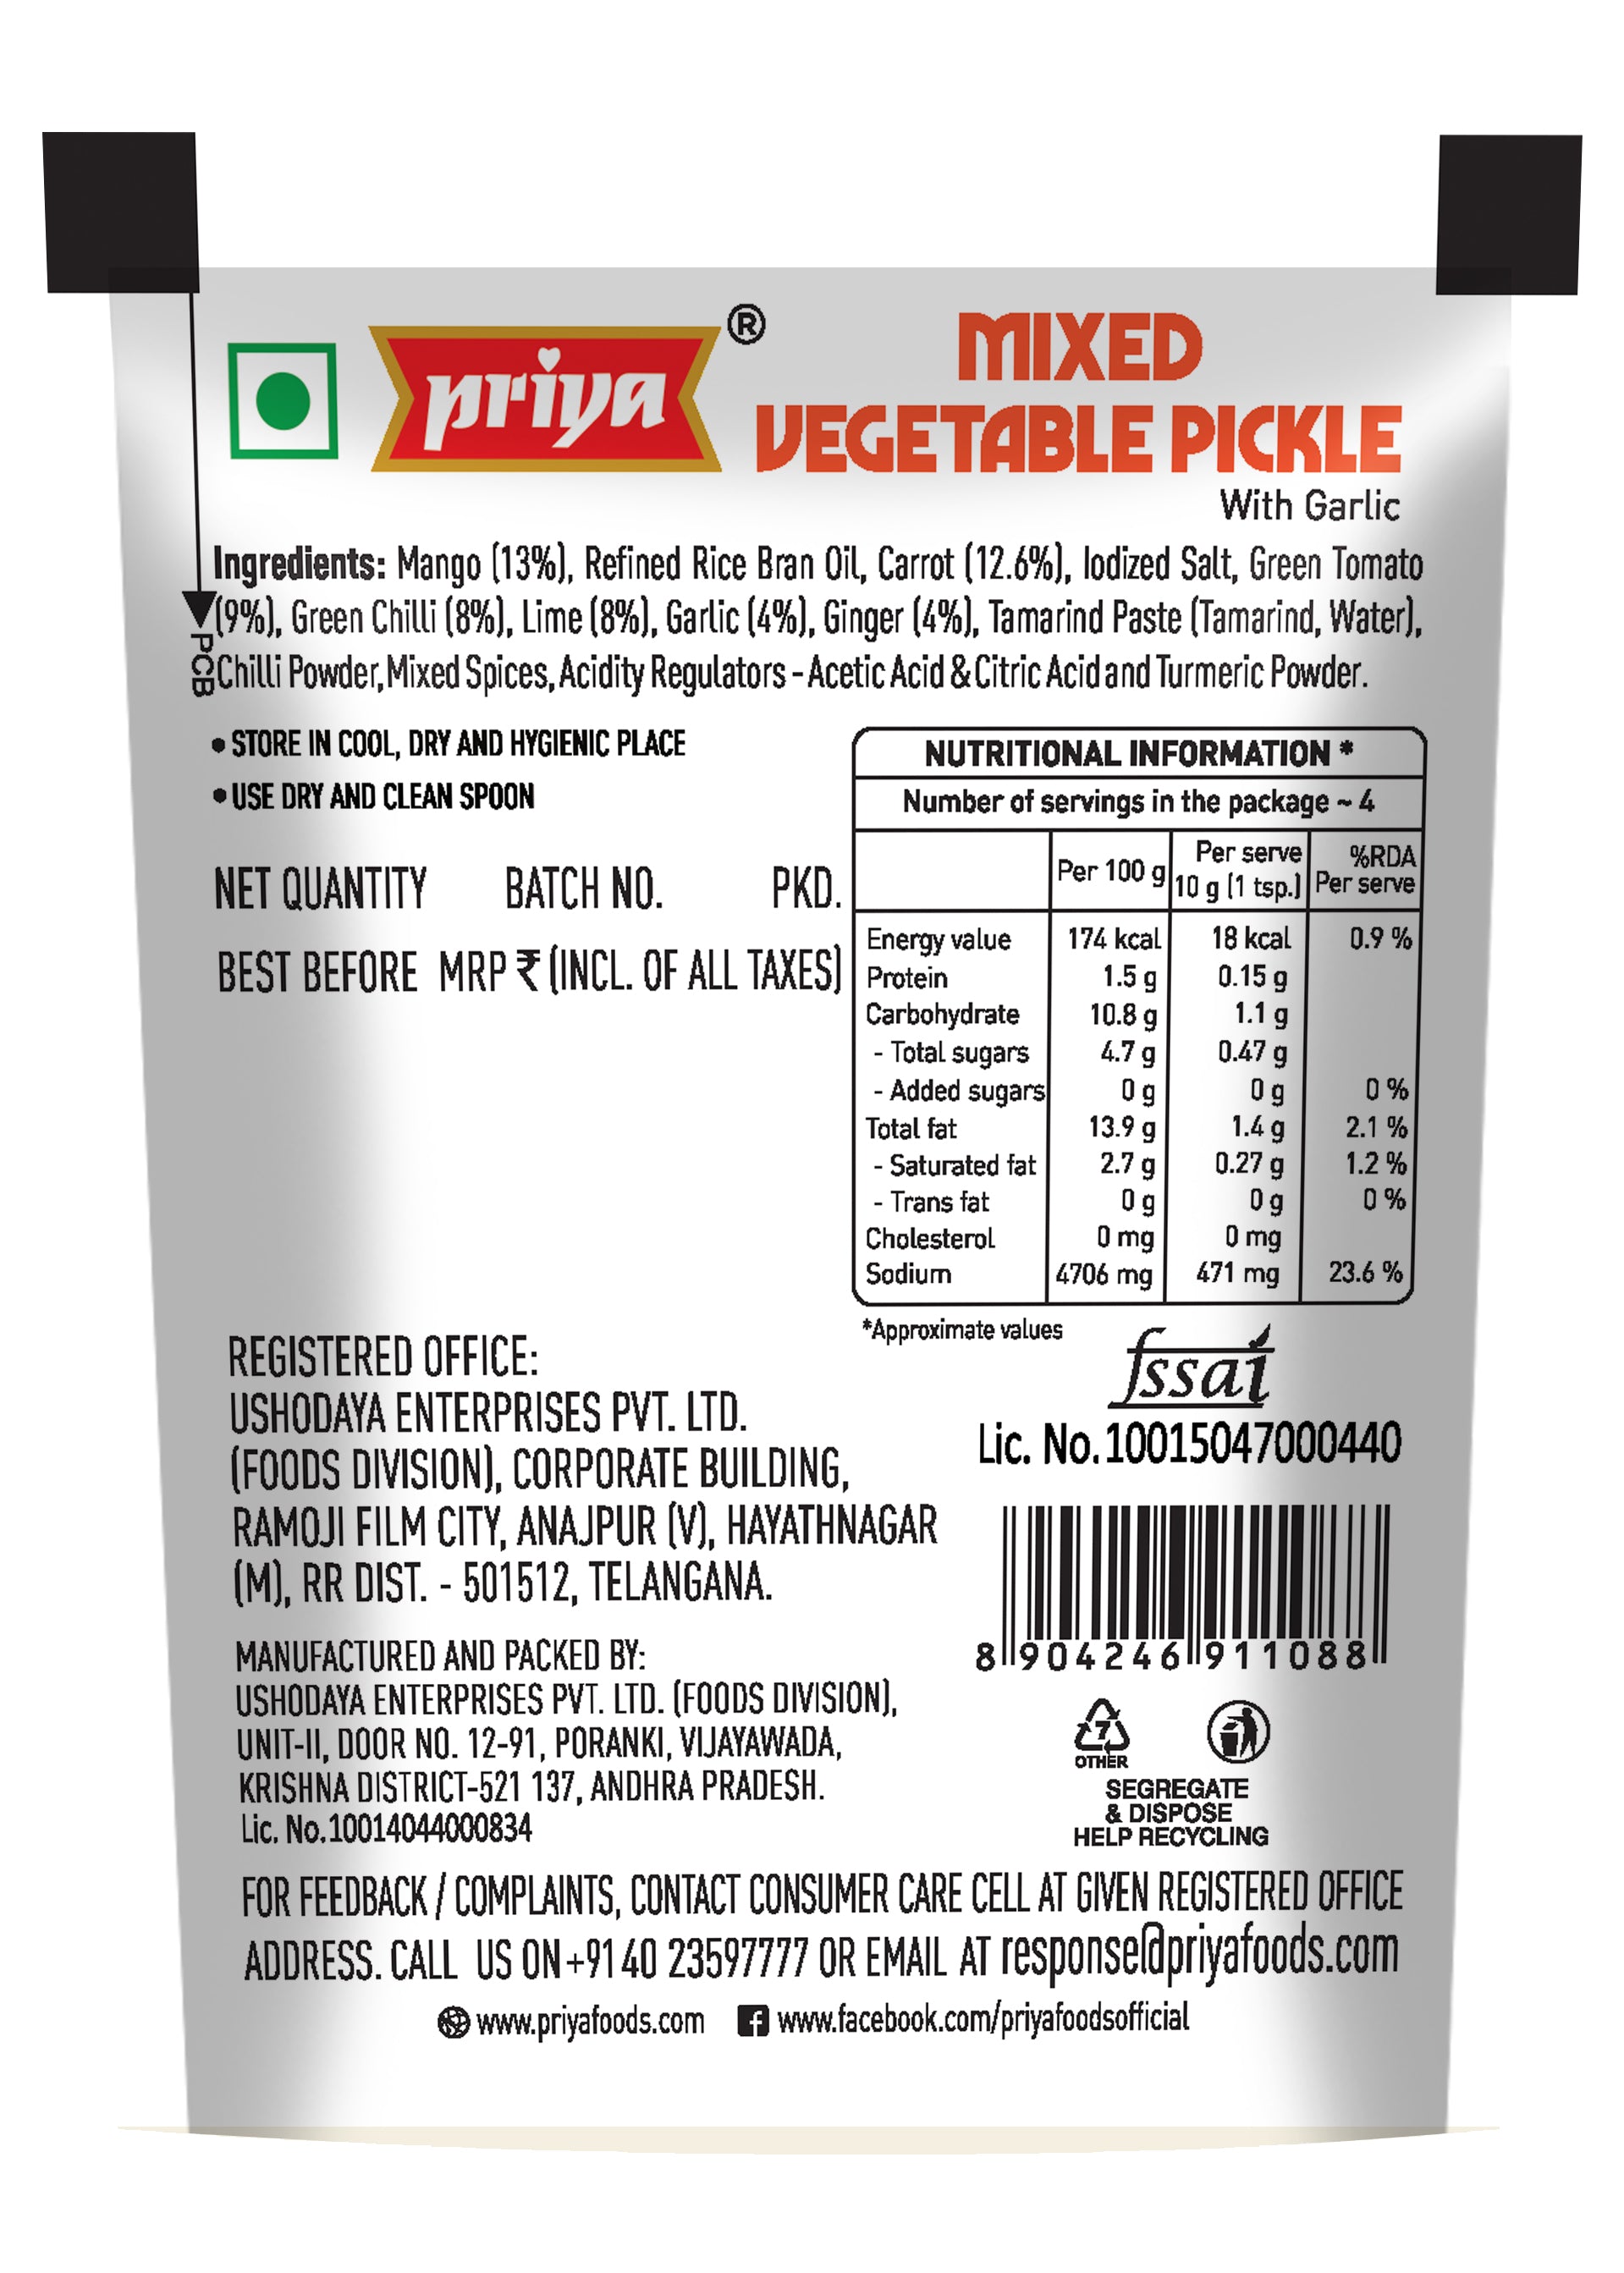 Buy priya Mixed Vegetable Pickle Online pack of 10